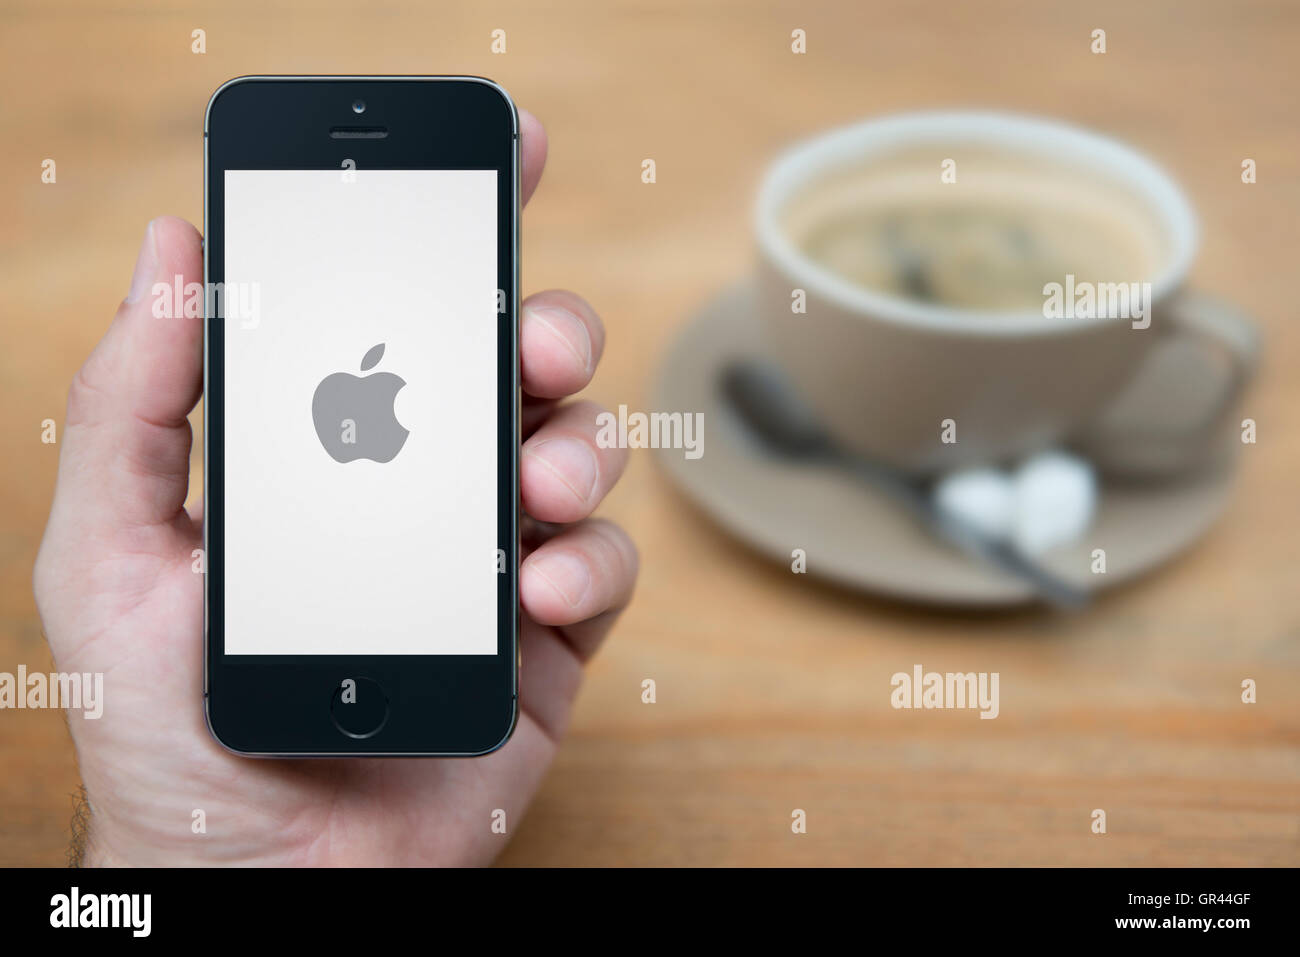 Un uomo guarda al suo iPhone che visualizza il logo Apple su uno sfondo bianco, con una tazza di caffè (solo uso editoriale). Foto Stock